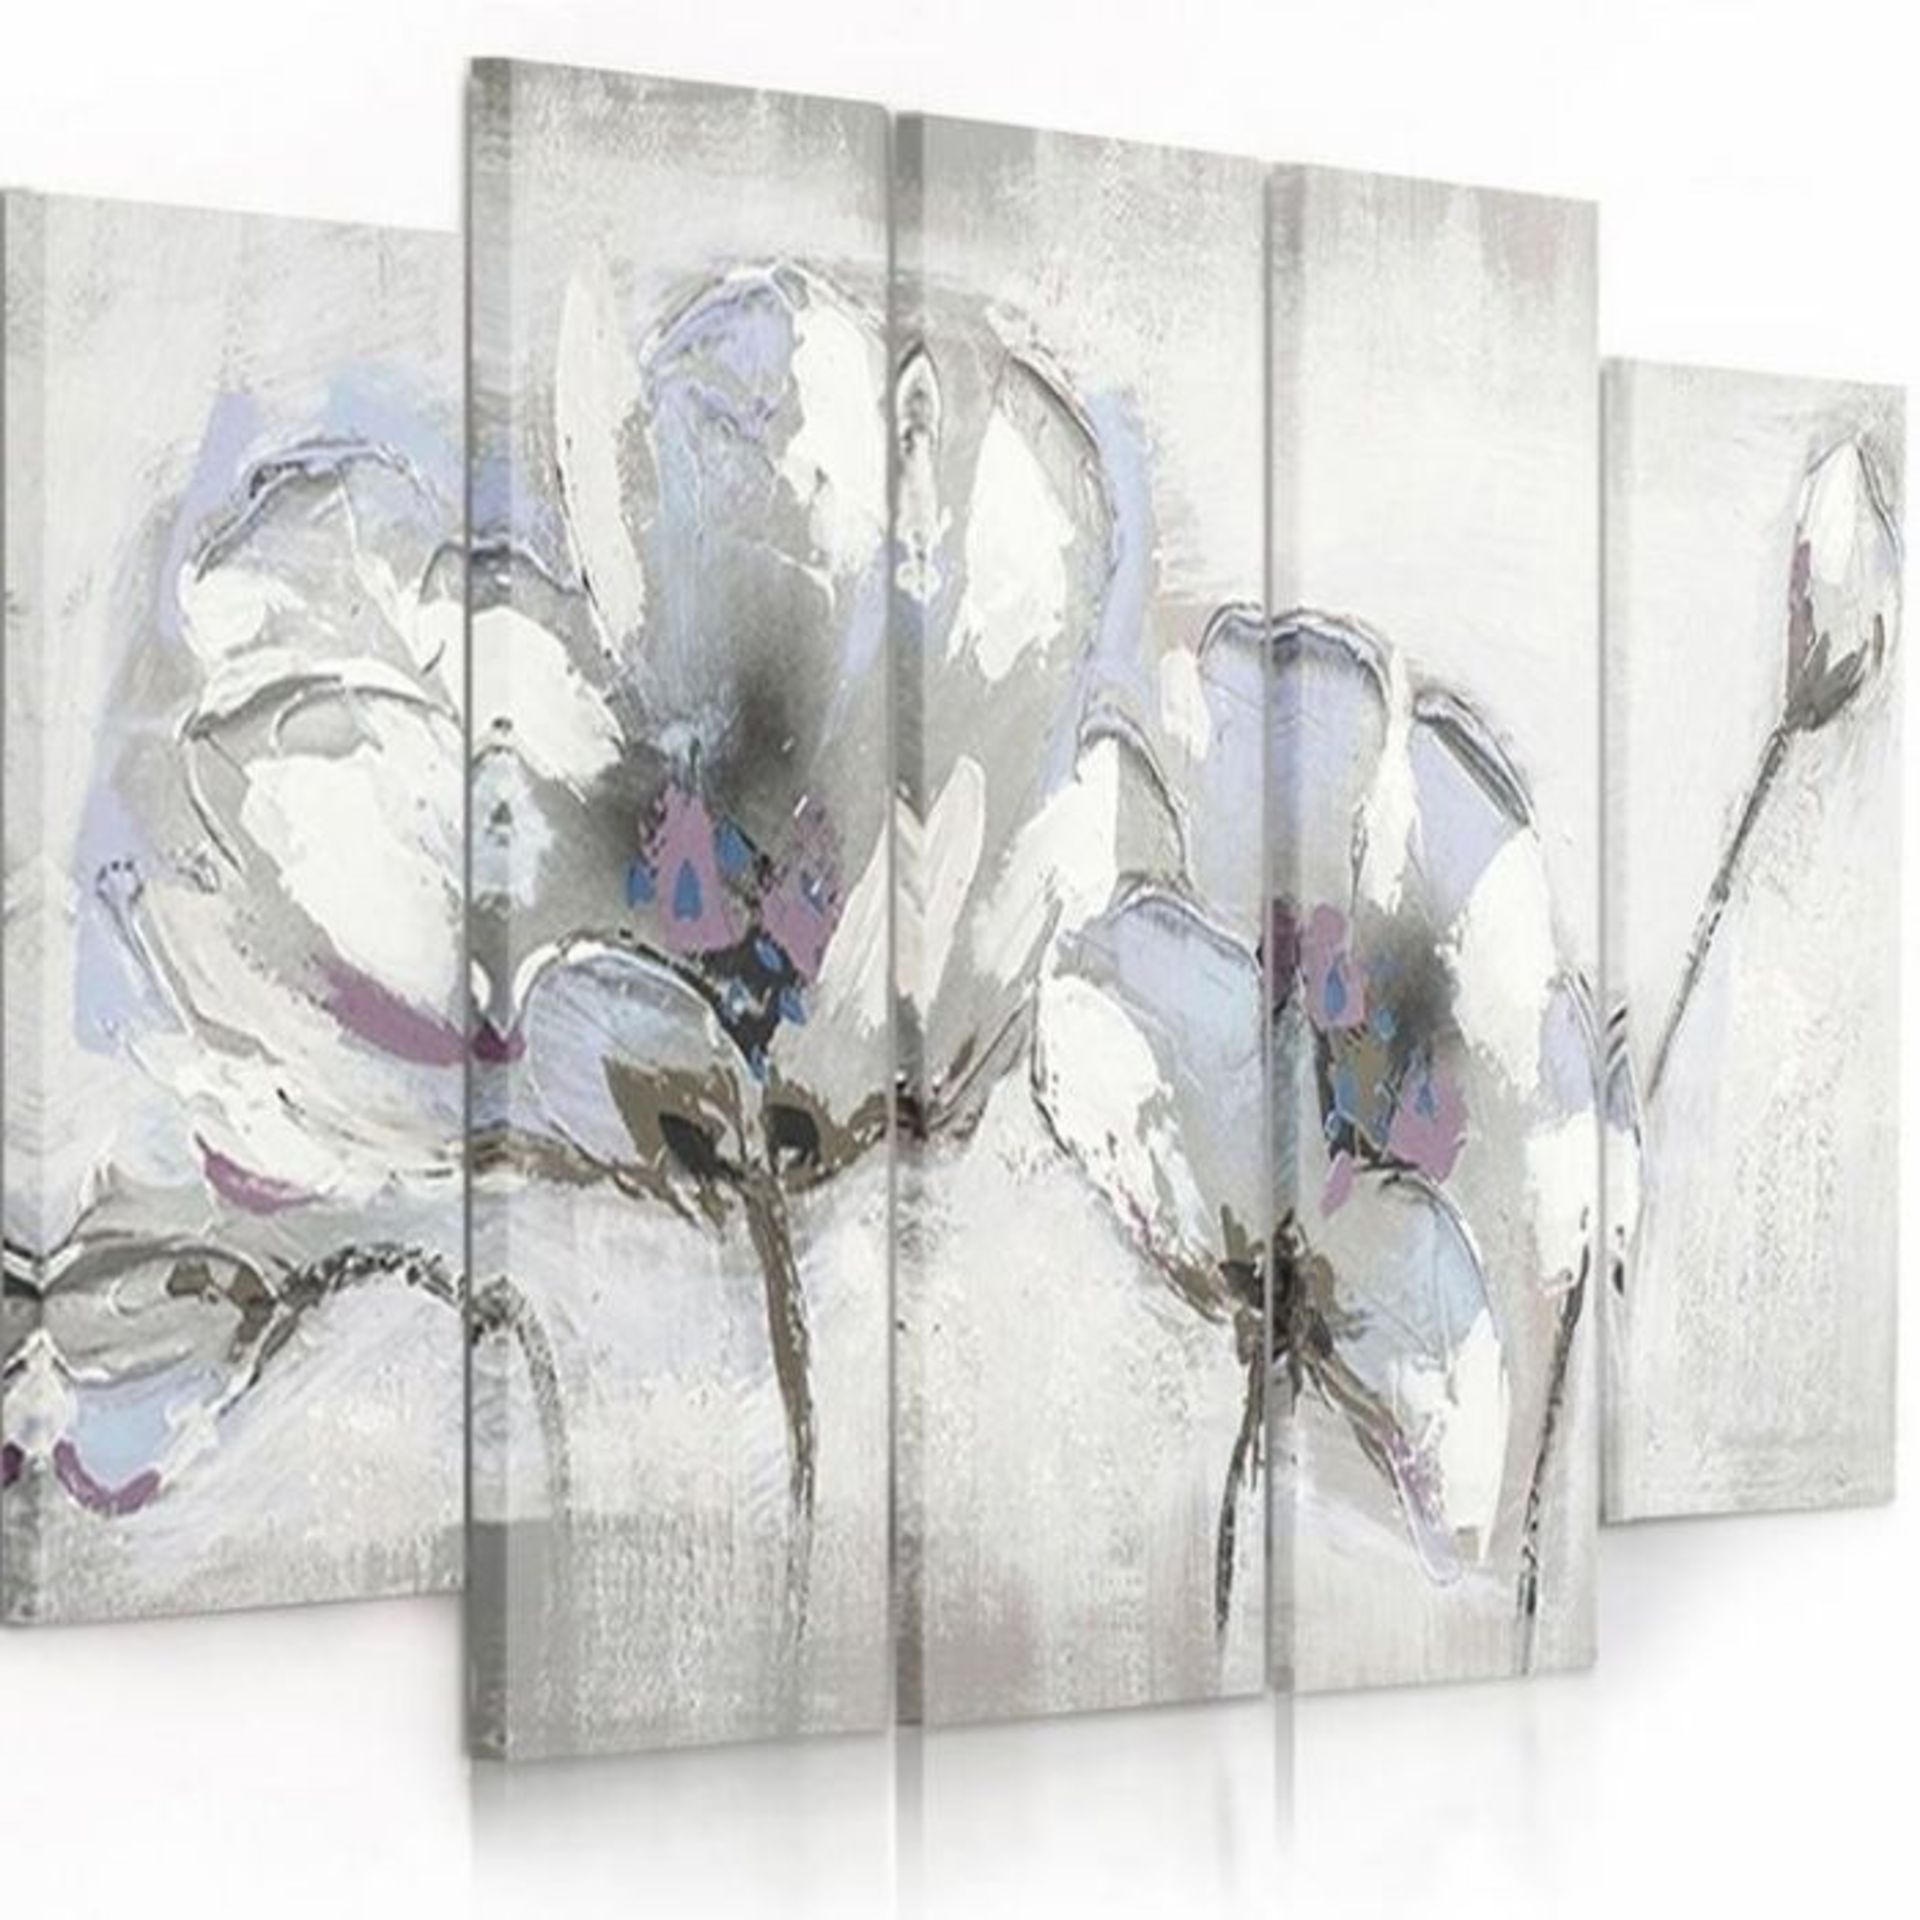 Brayden Studio, Painted Flowers - 5 Piece Print (100cm H x 200cm W x 3cm D) - RRP £165.99 (